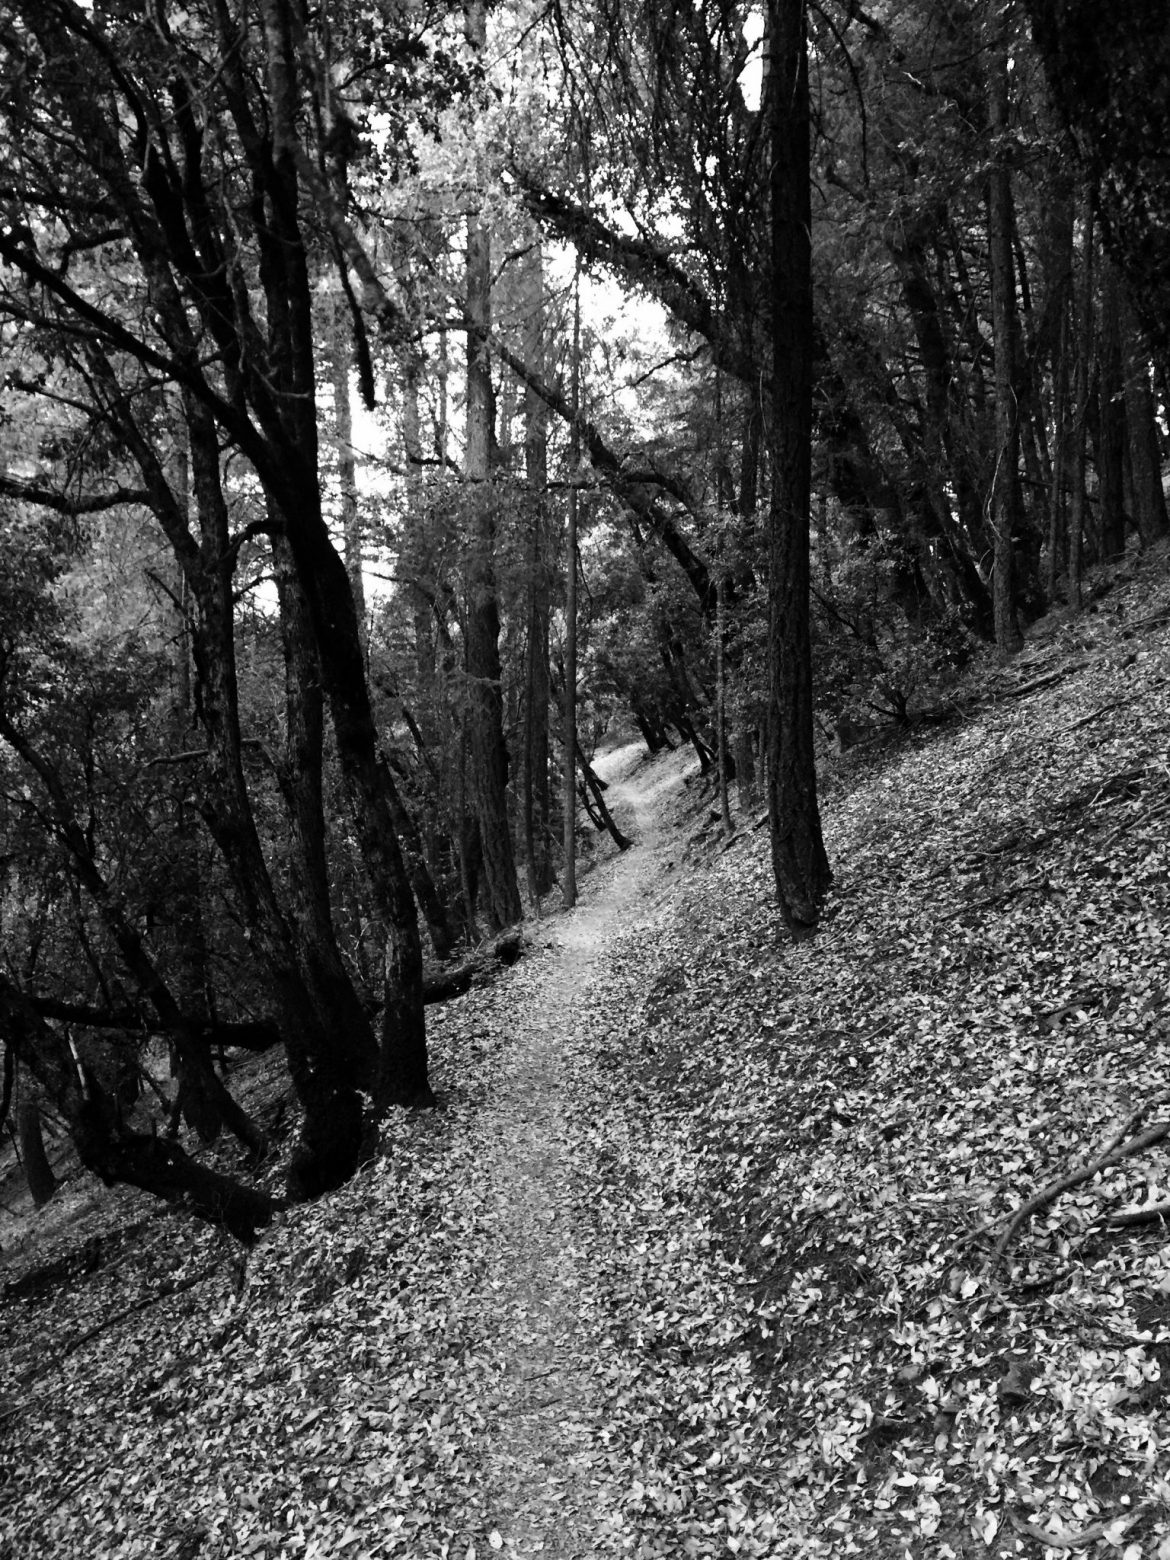 PCT traversing a quiet forest